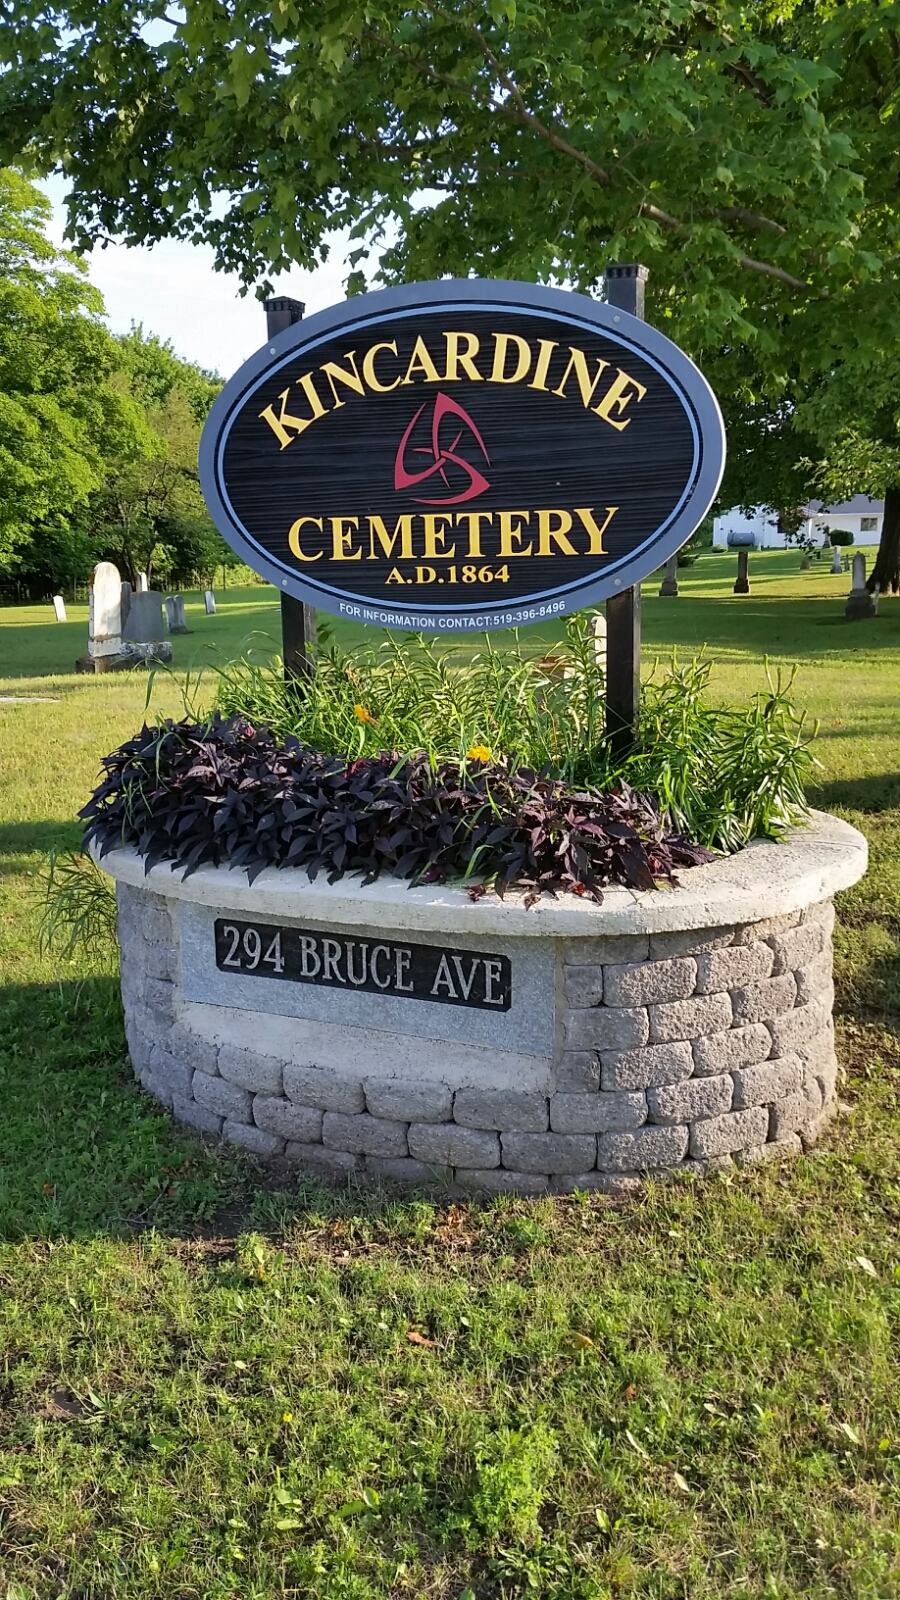 Kincardine Cemetery